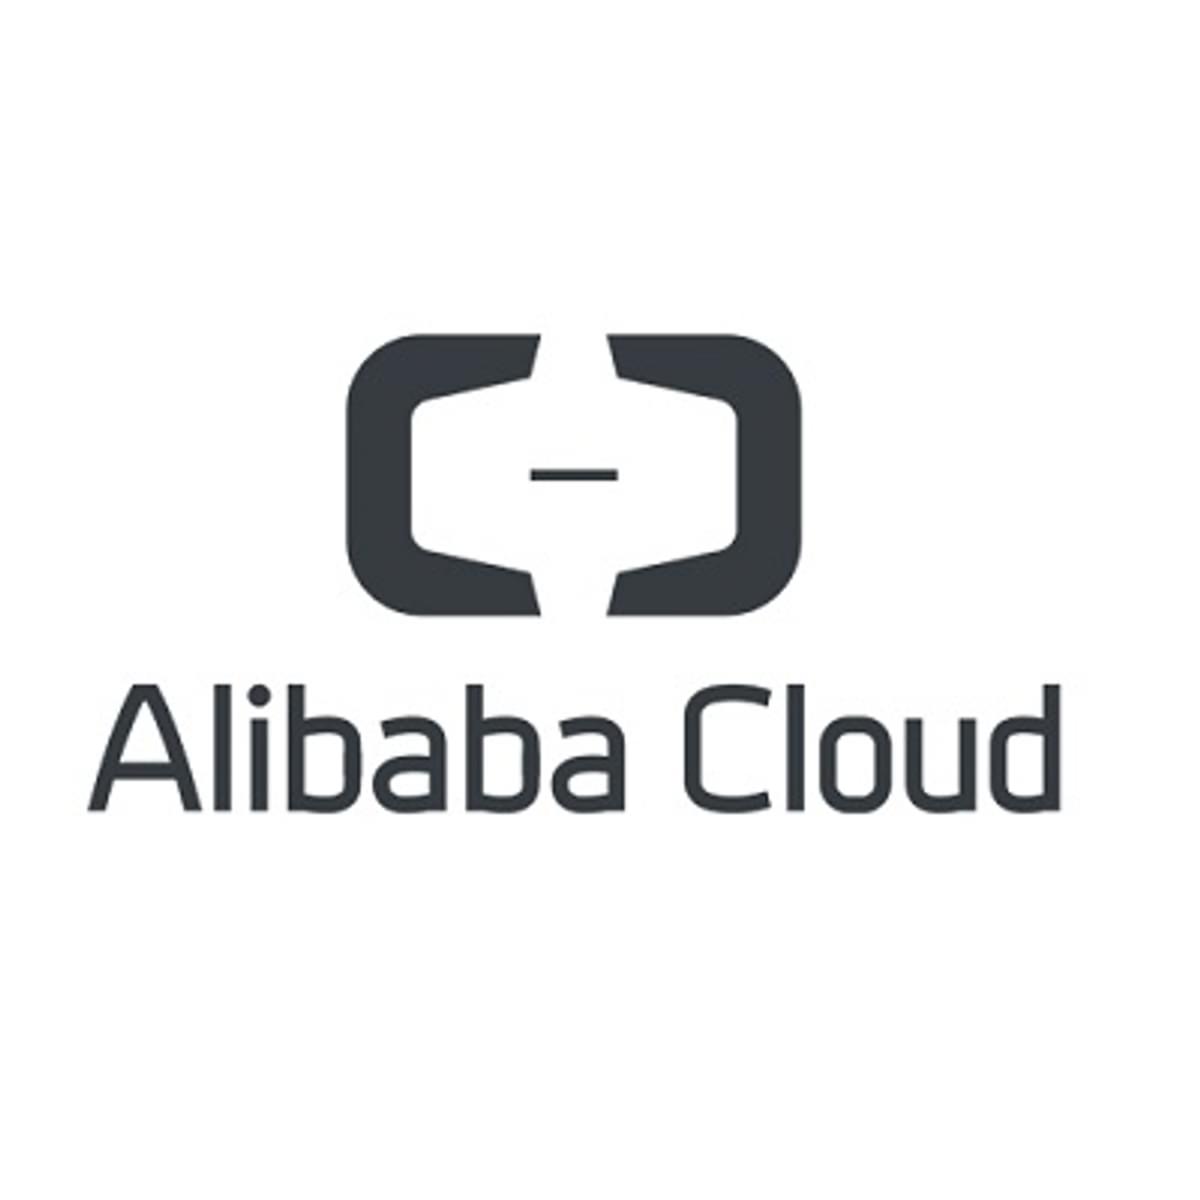 Elastic en Alibaba Cloud breiden partnerschap uit image